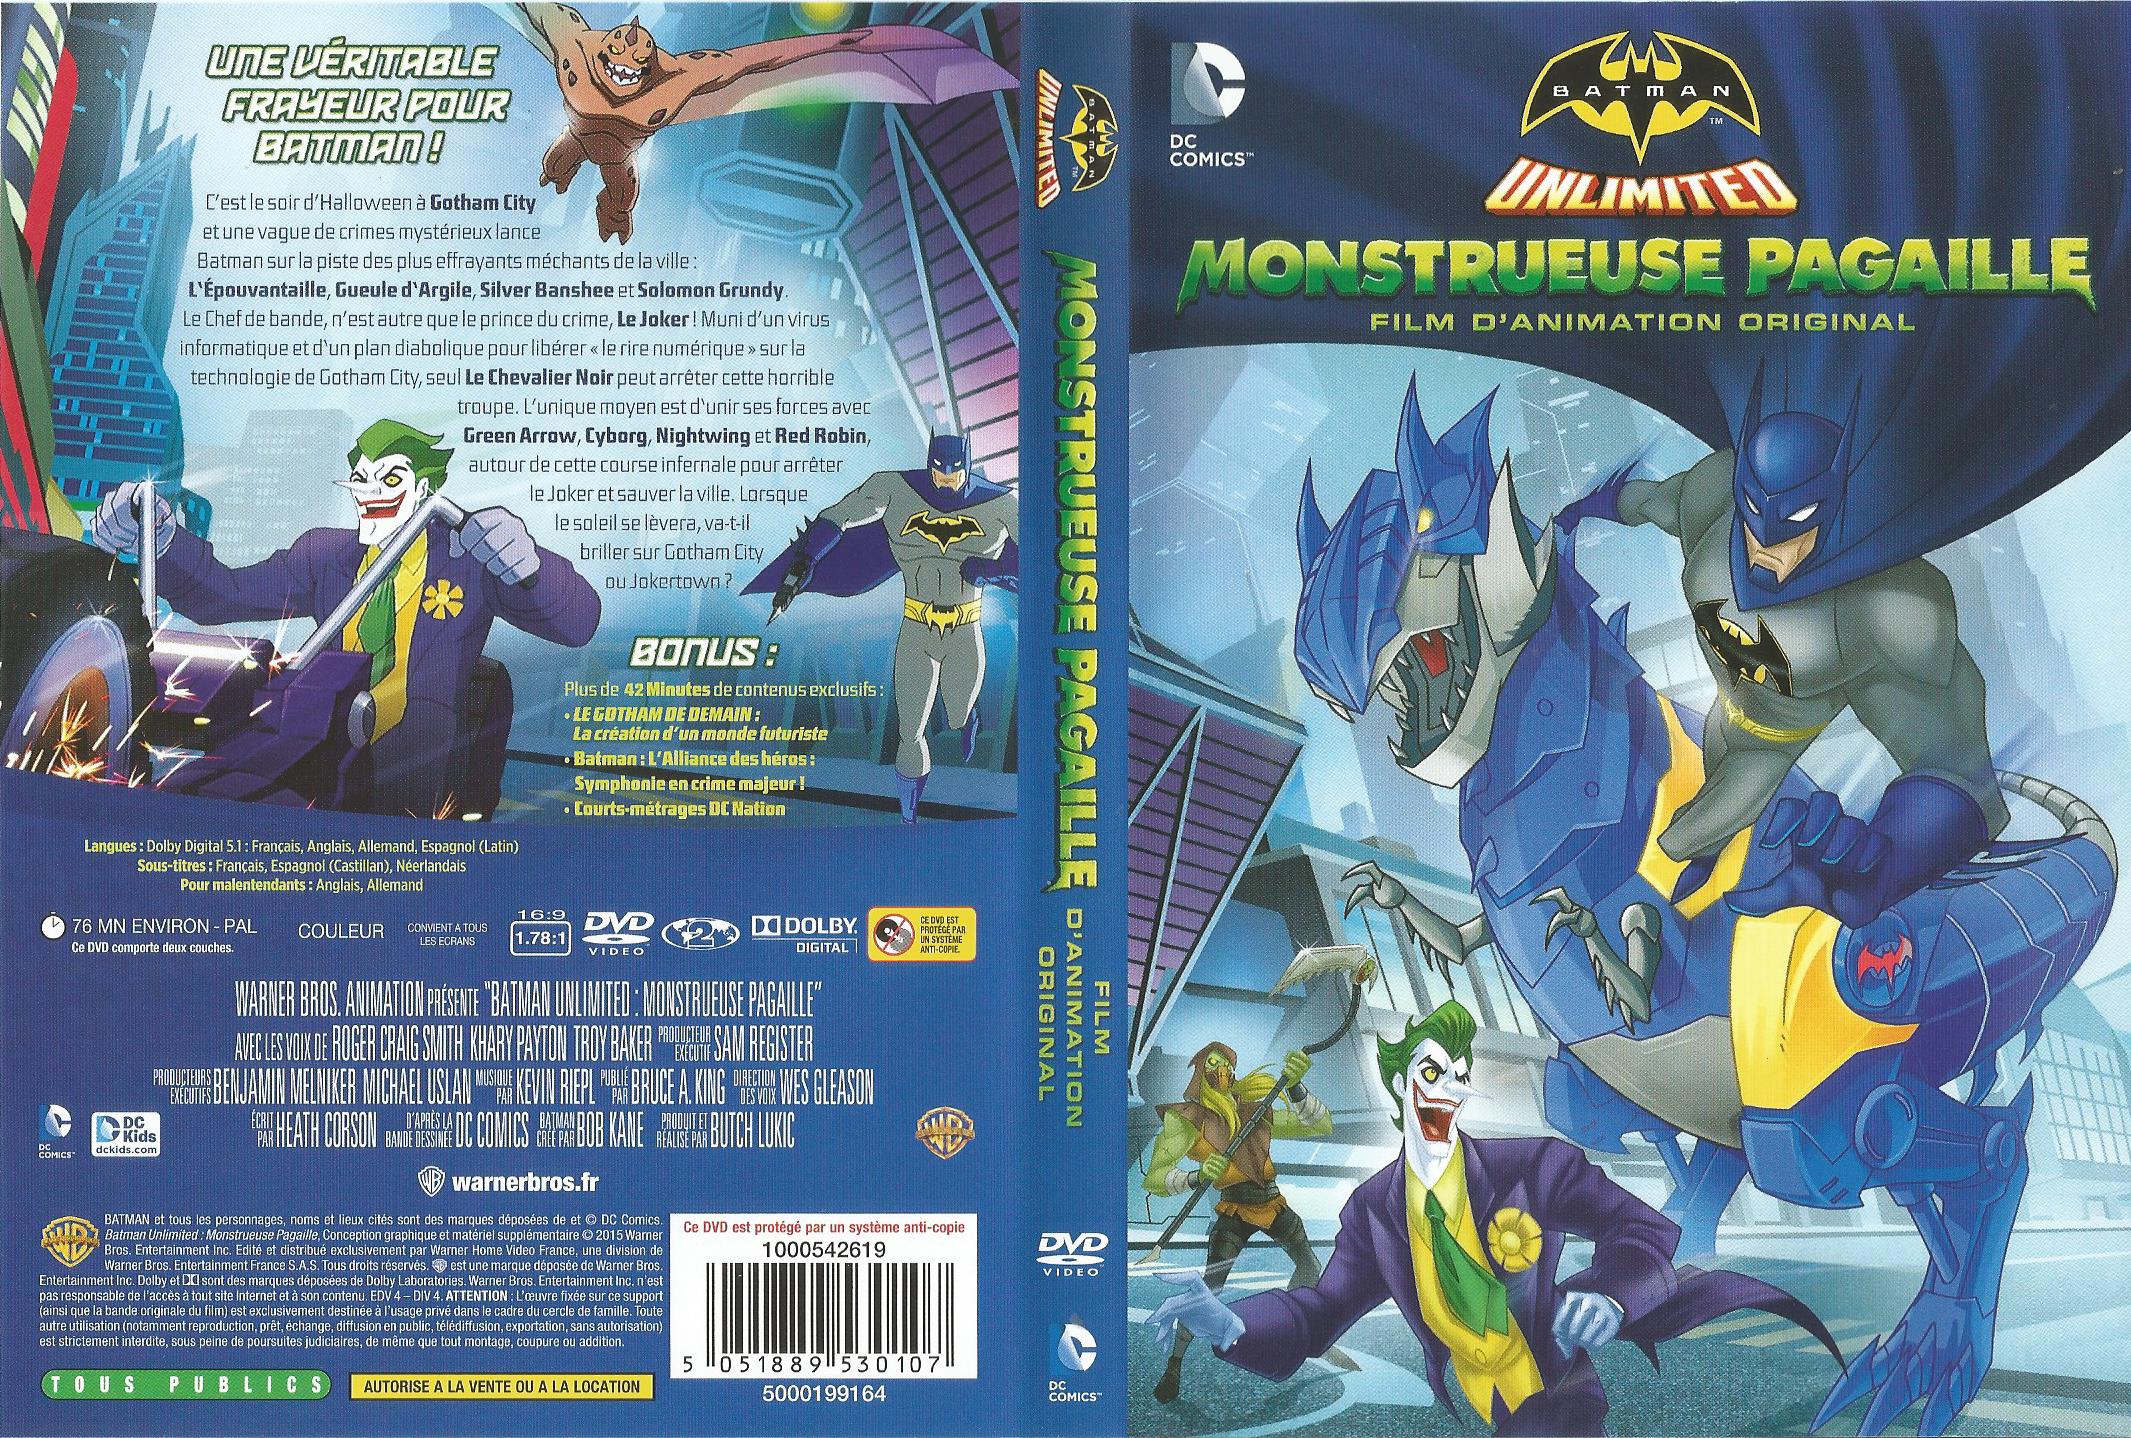 Jaquette DVD Batman unlimited monstrueuse pagaille